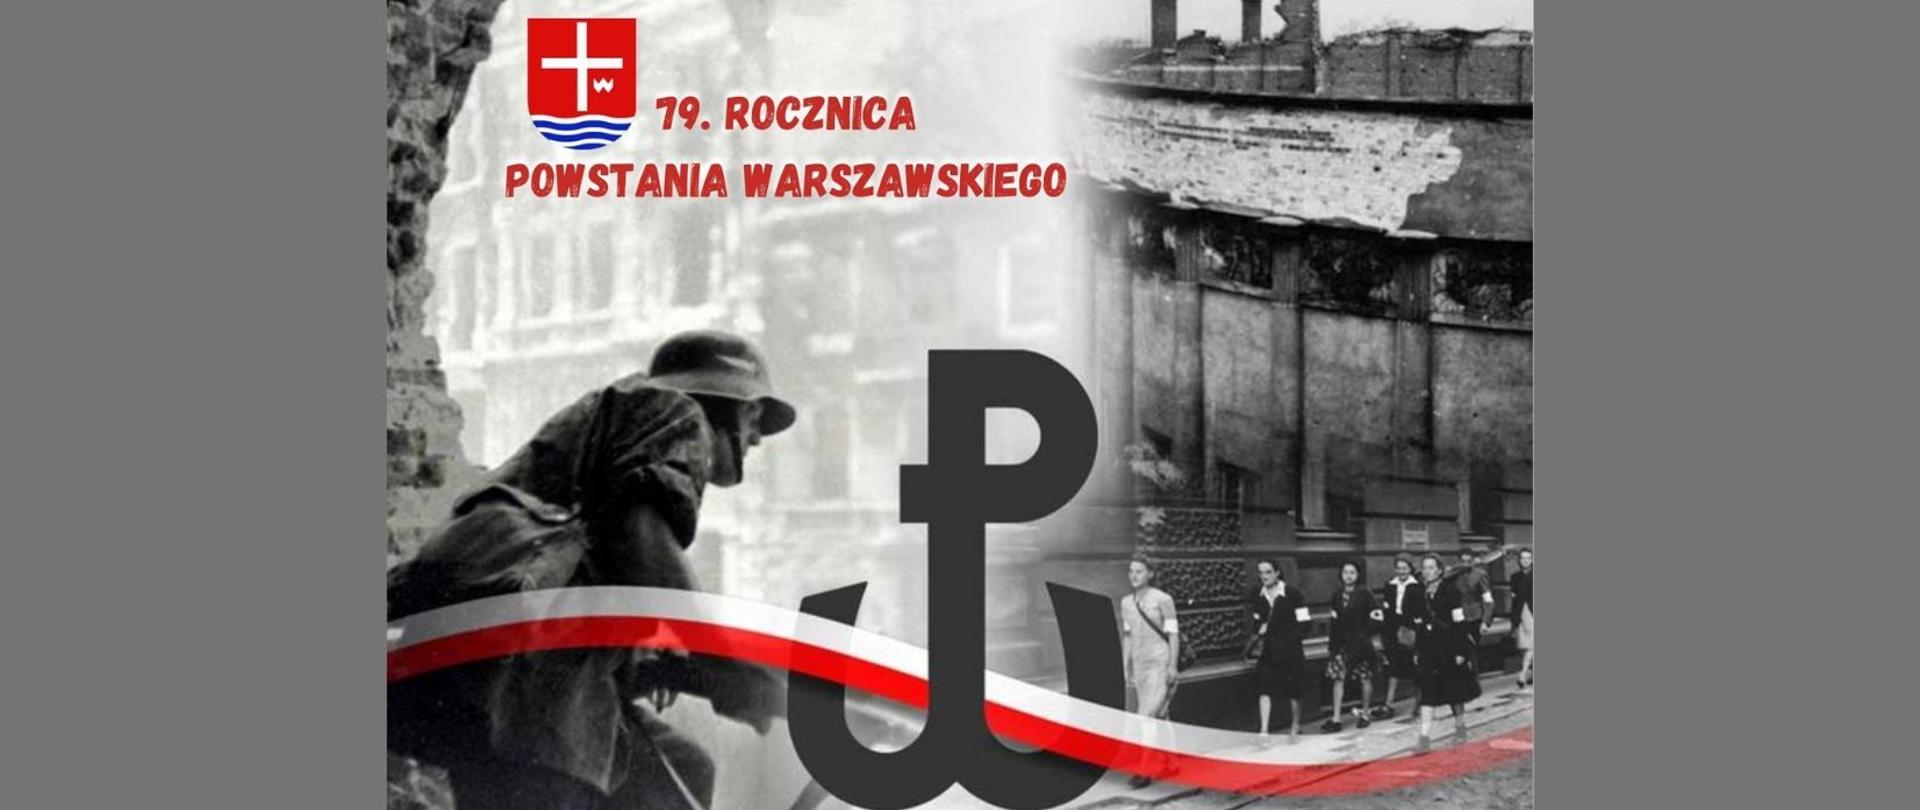 Czerwony napis 79 rocznica Powstania Warszawskiego z herbem powiatu lipskiego na grafice symbolizującej Powstanie Warszawskie z archiwalnym zdjęciem, kotwicą oraz barwami narodowymi.